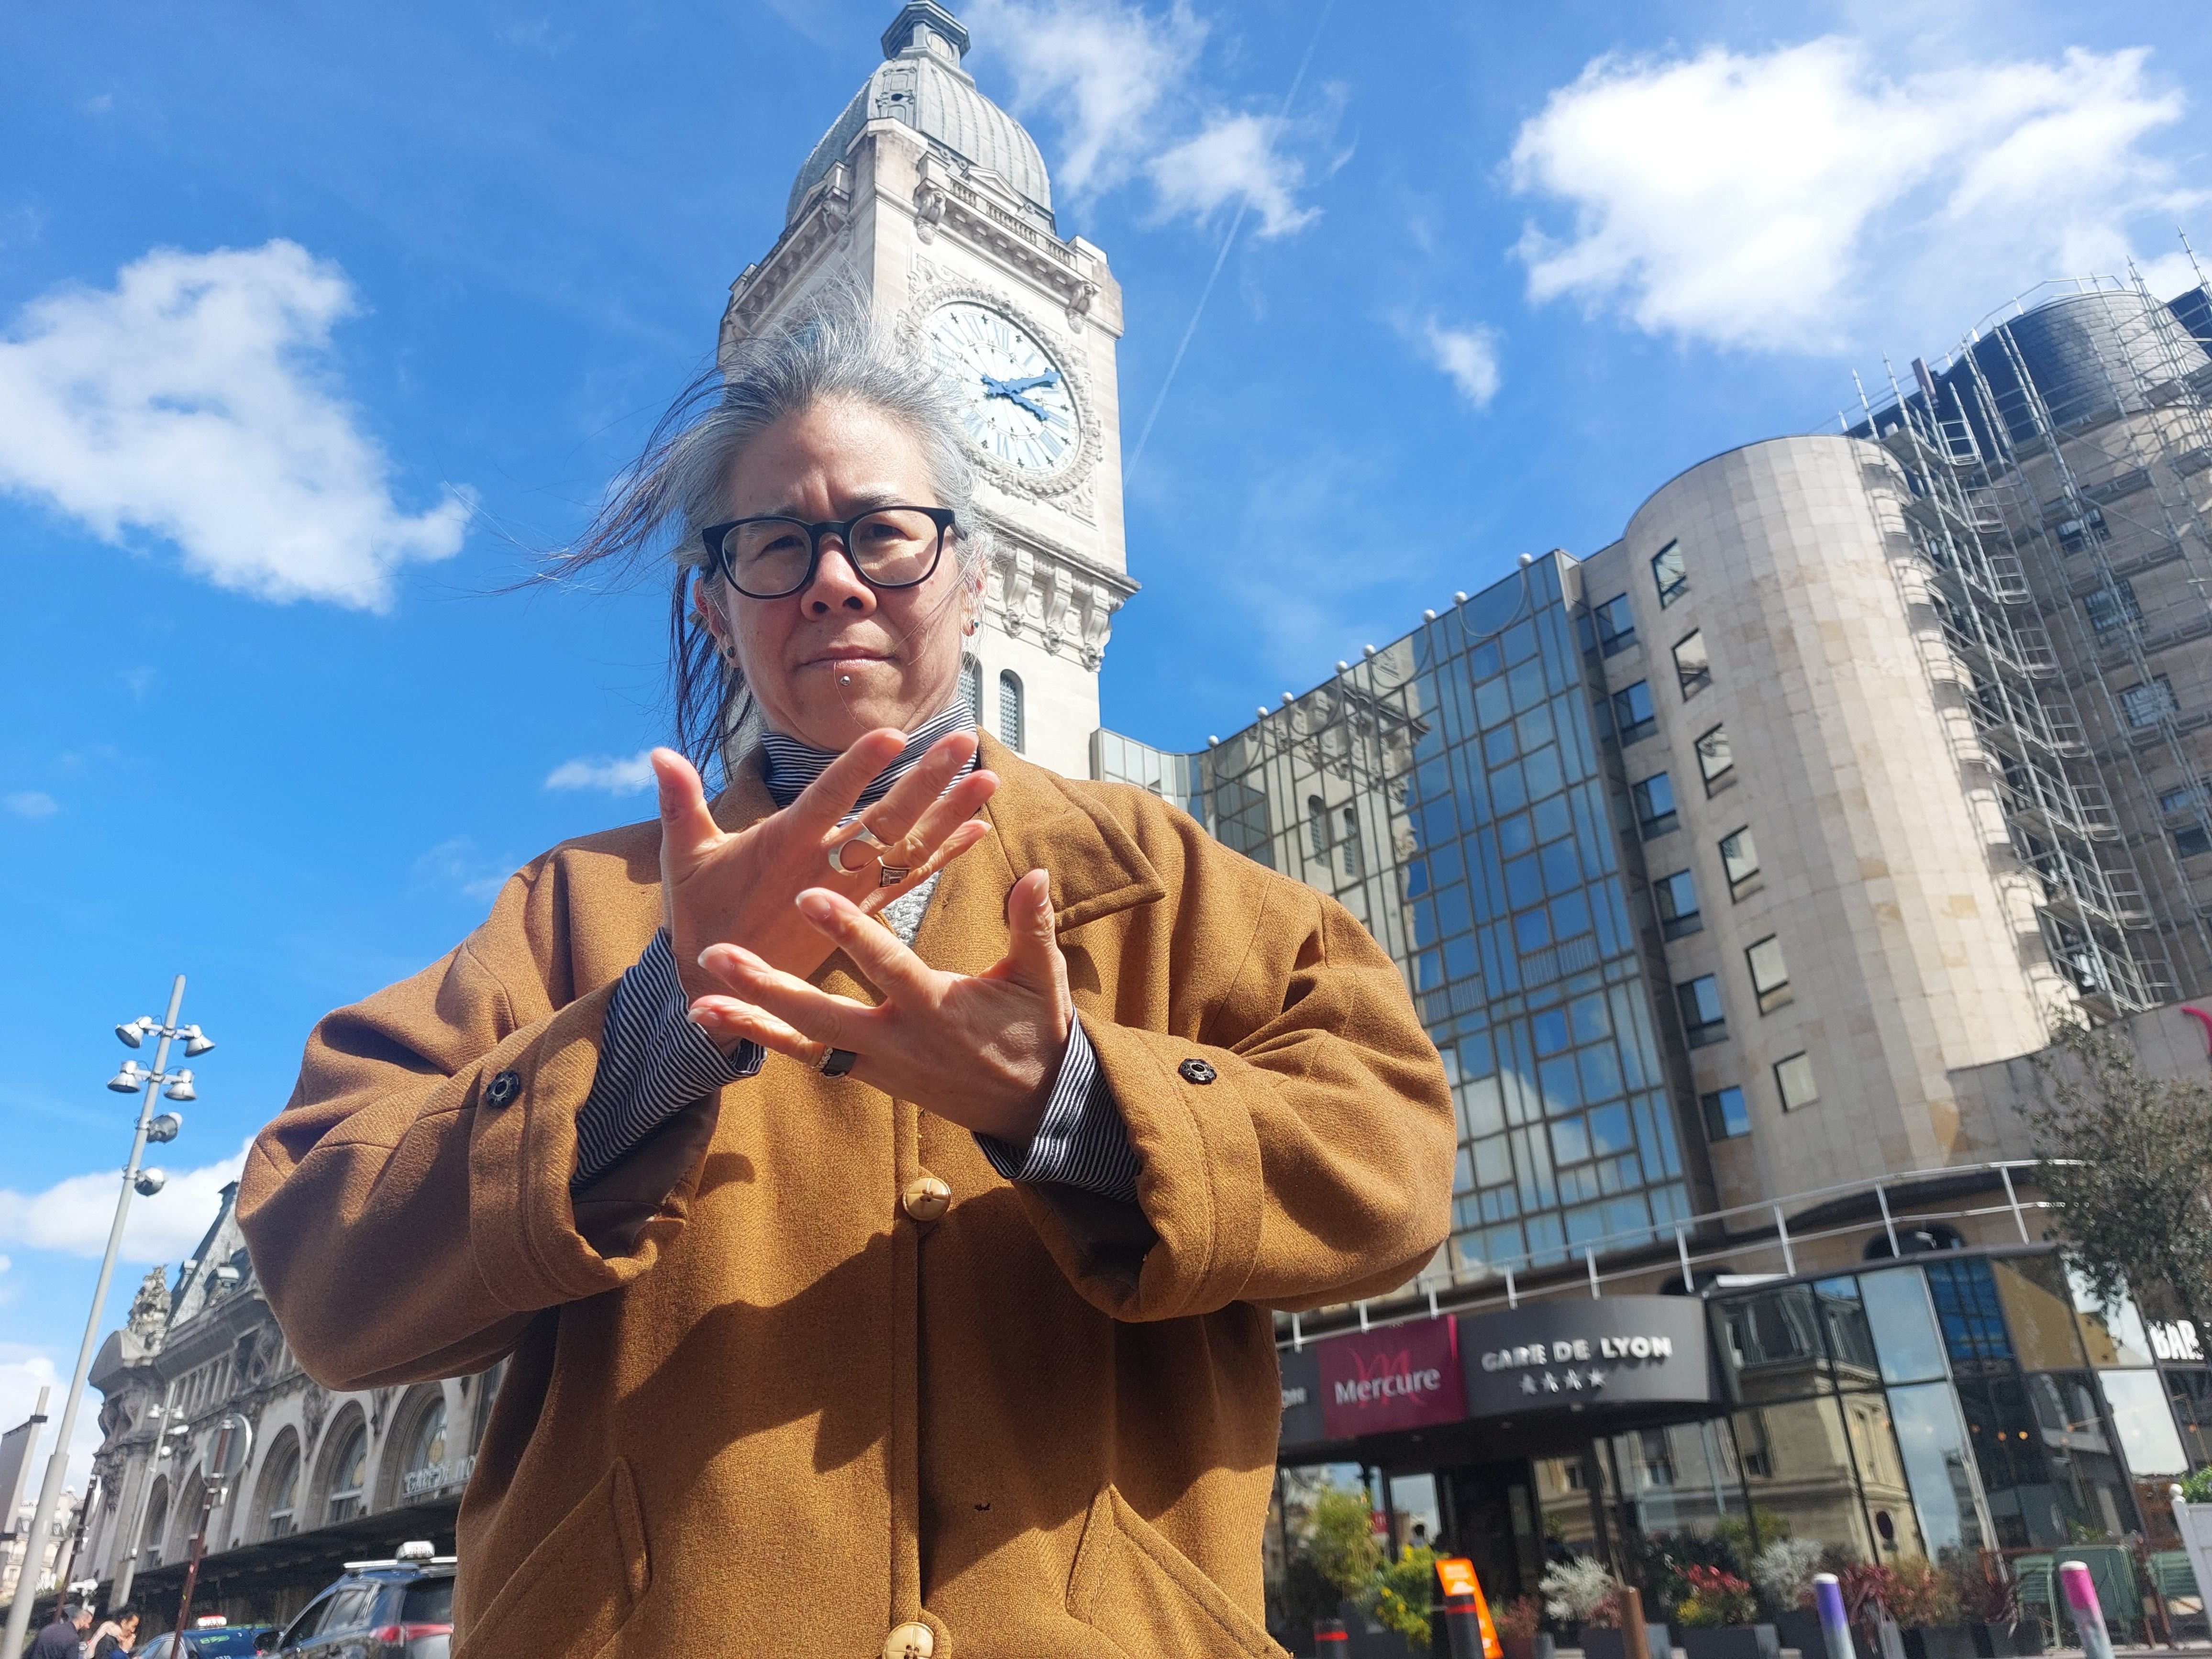 Paris (XIIe), le 4 avril. Shirley Tong On, vice-présidente des Femmes sourdes citoyennes et solidaires, traduit ici en langue des signes le slogan «Libérons la parole». LP/Denis Courtine